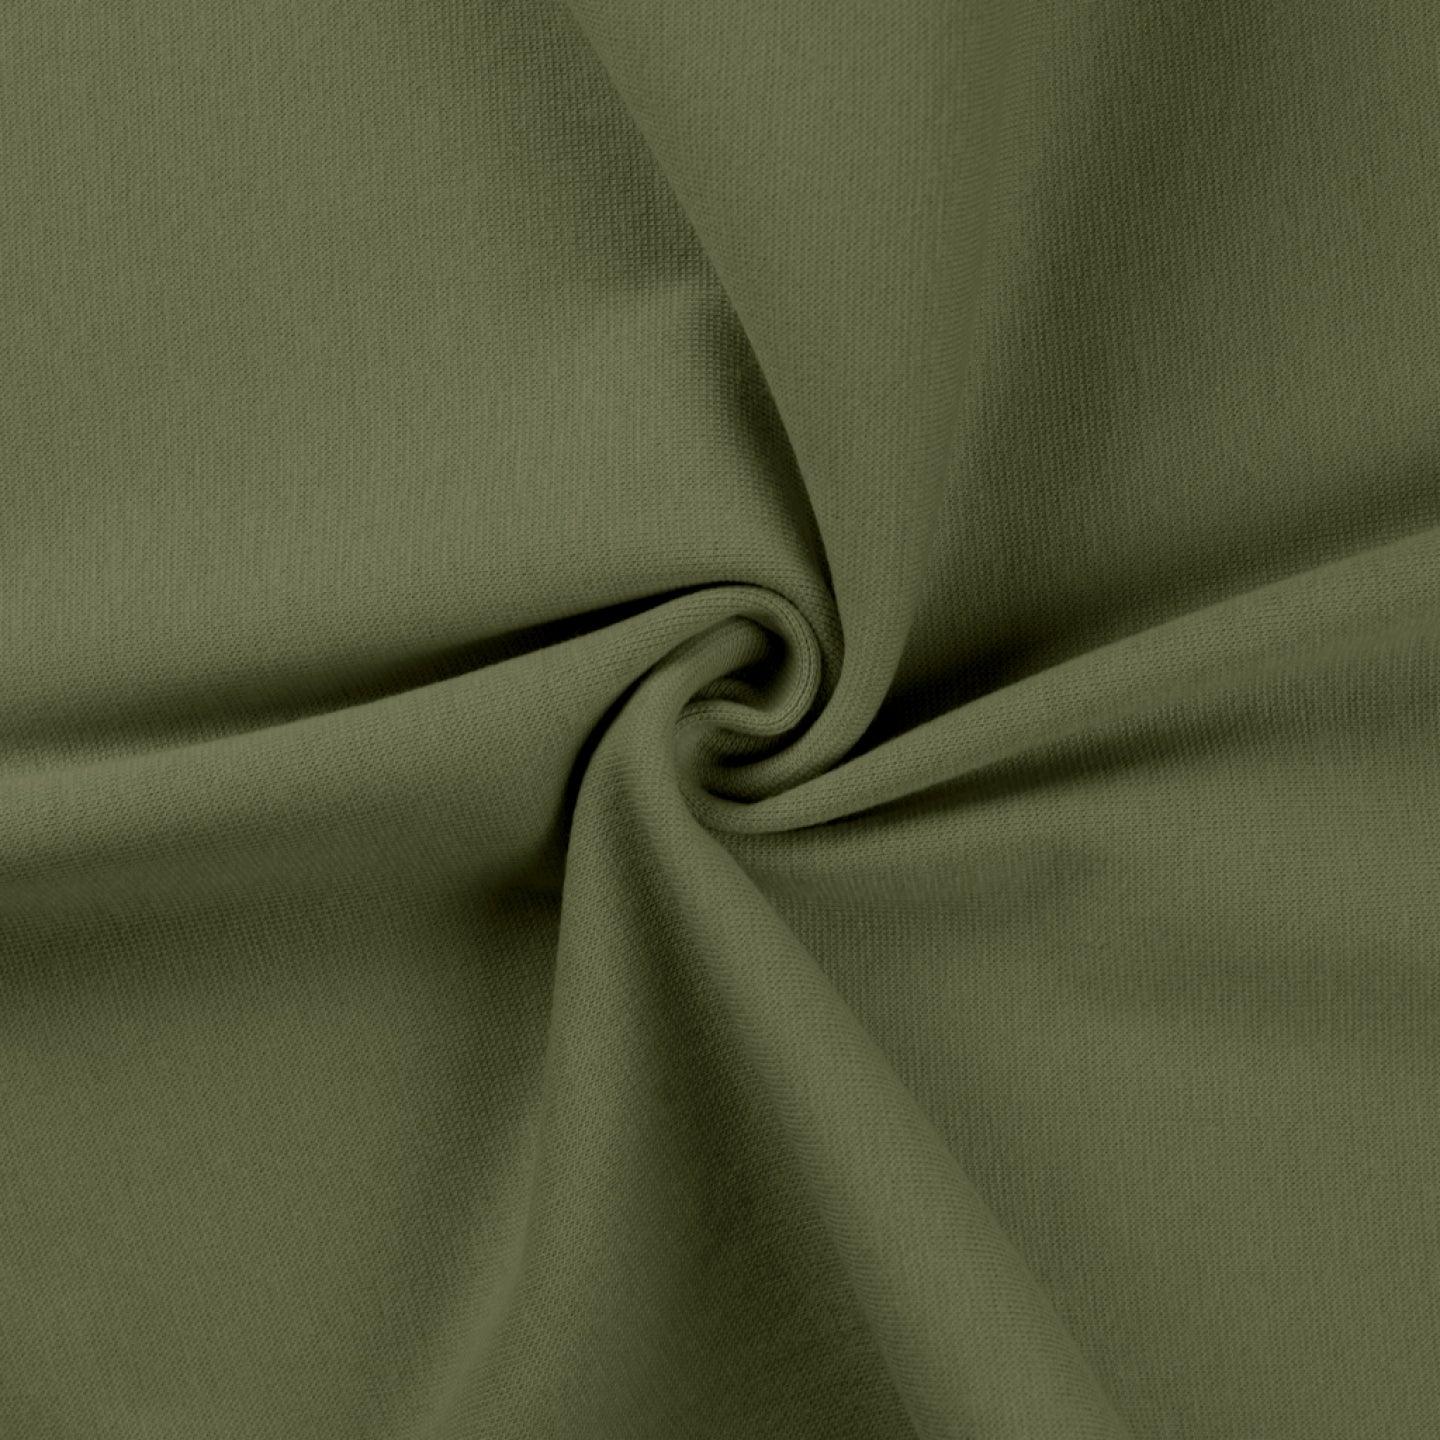 Cotton Elastane Brushed Back Sweatshirt Fabric